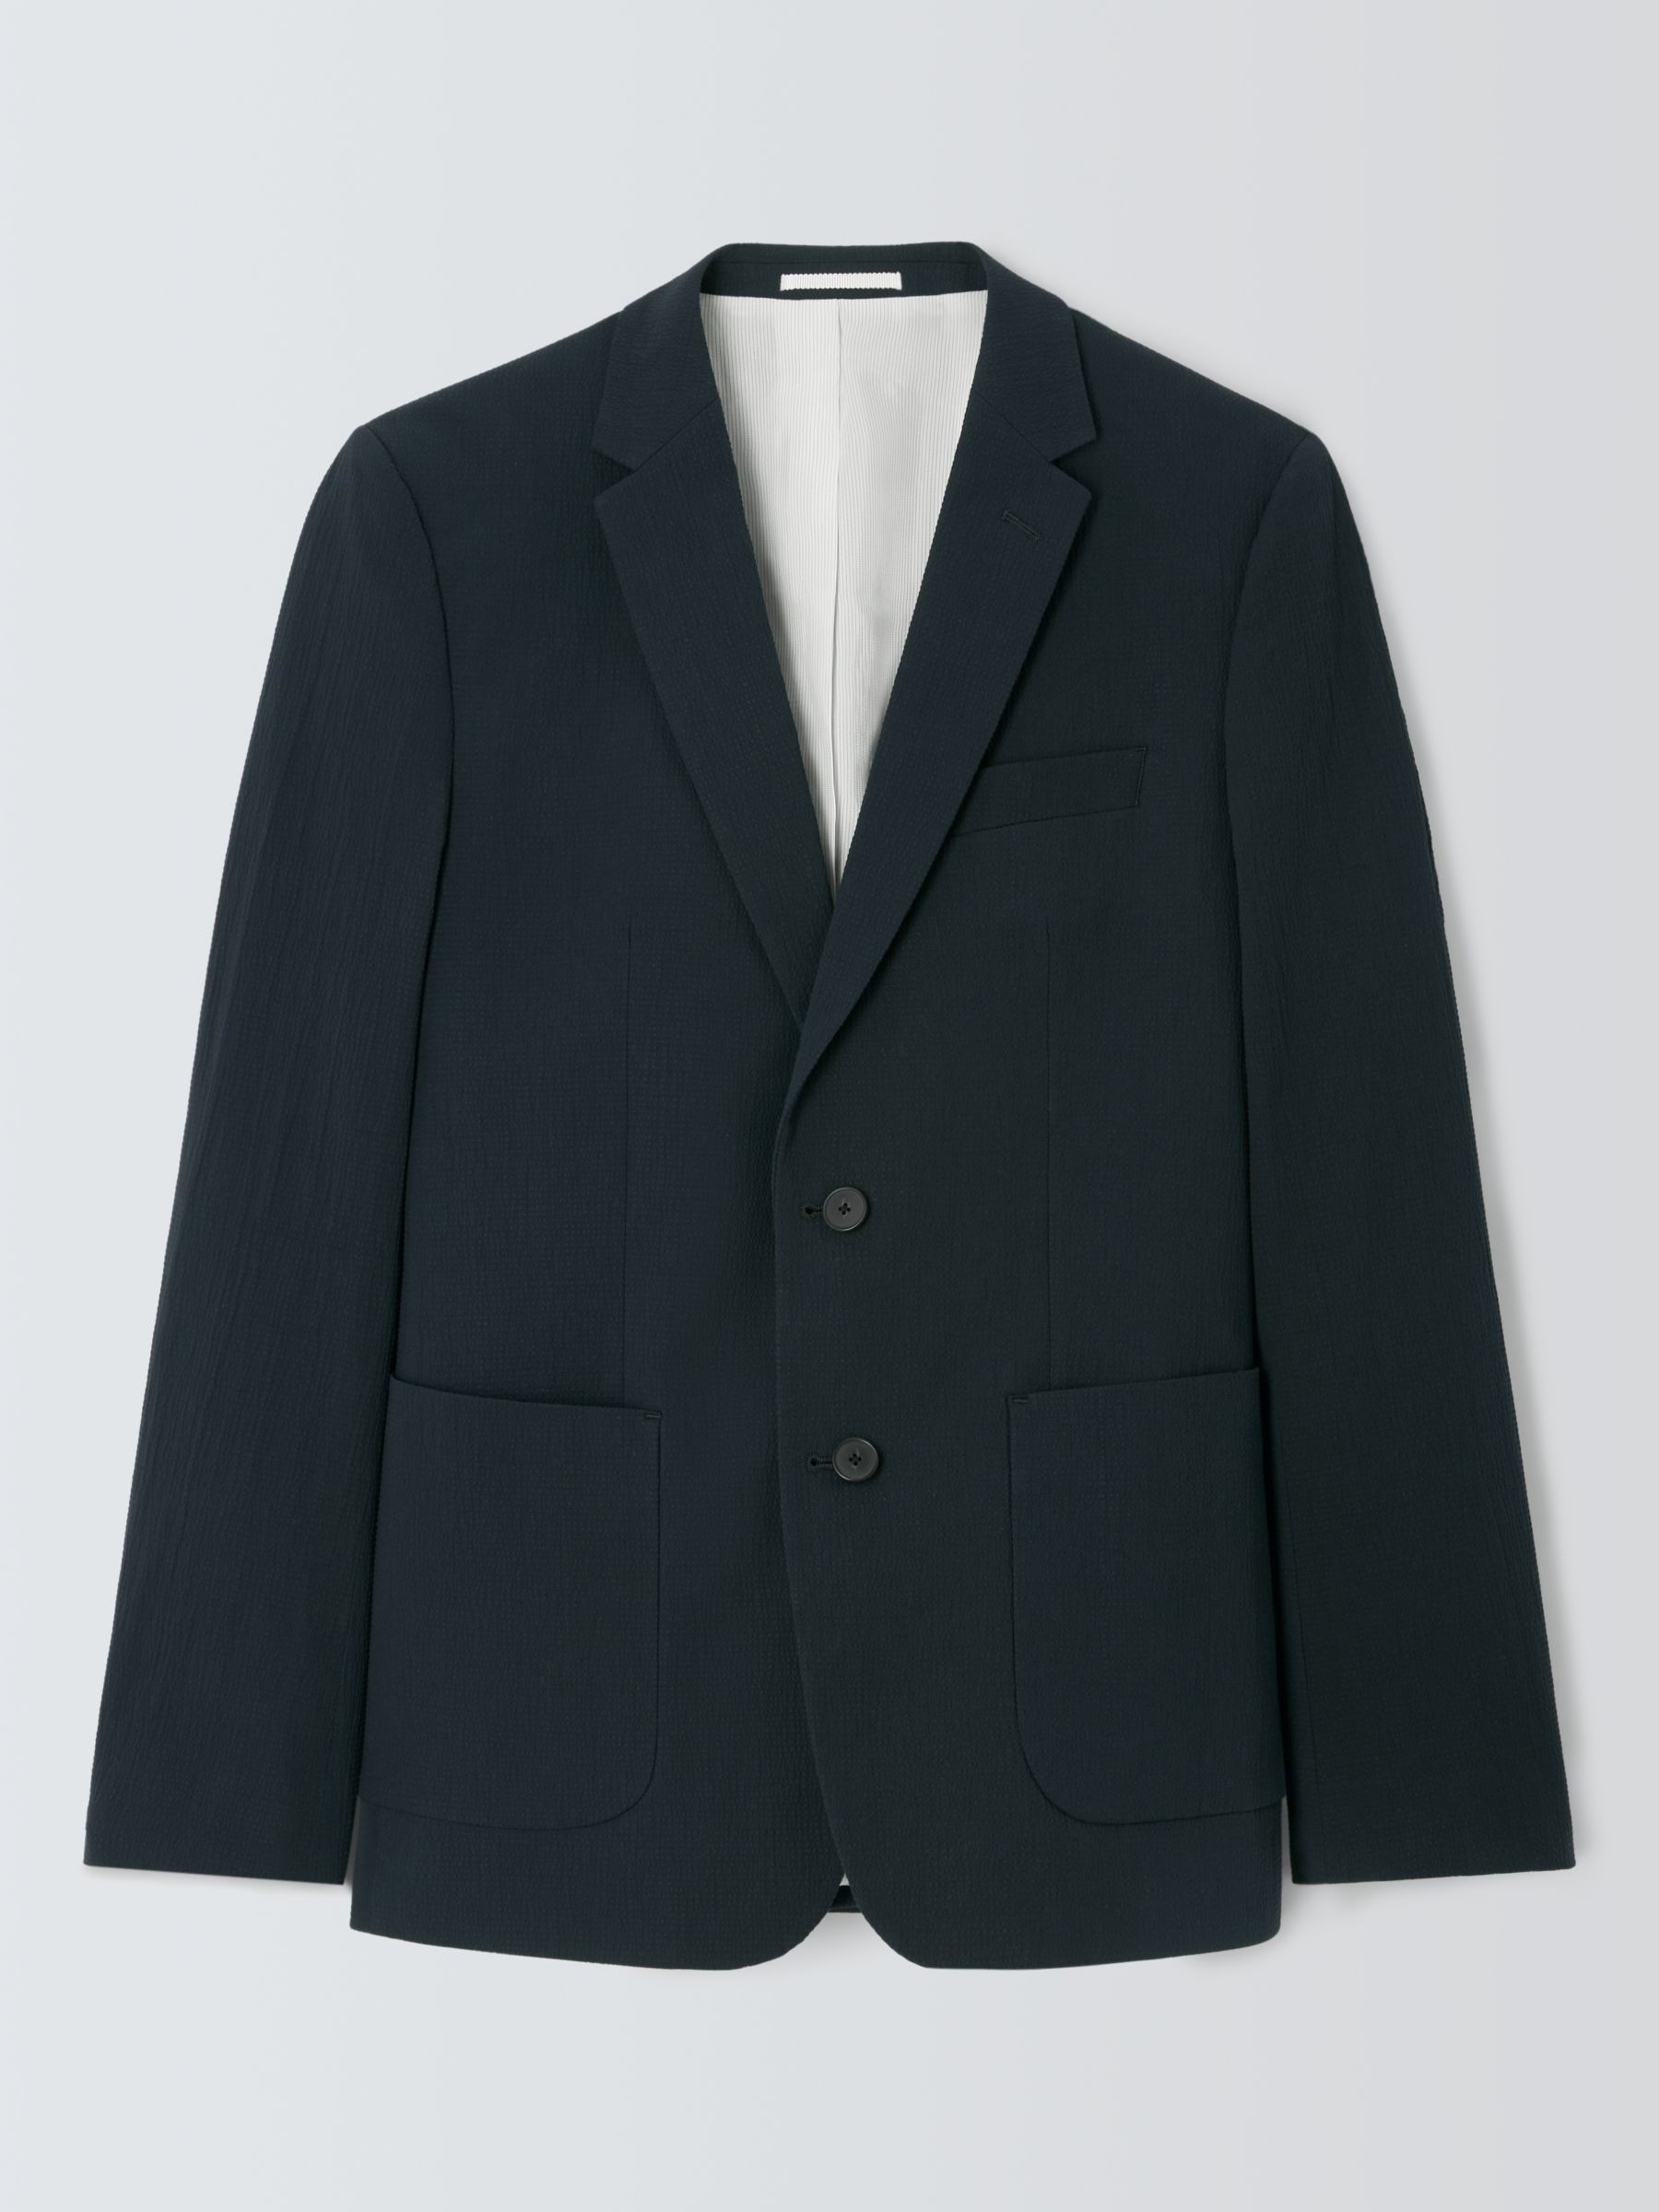 Kin Asher Cotton Seersucker Slim Fit Suit Jacket, Navy, 42S